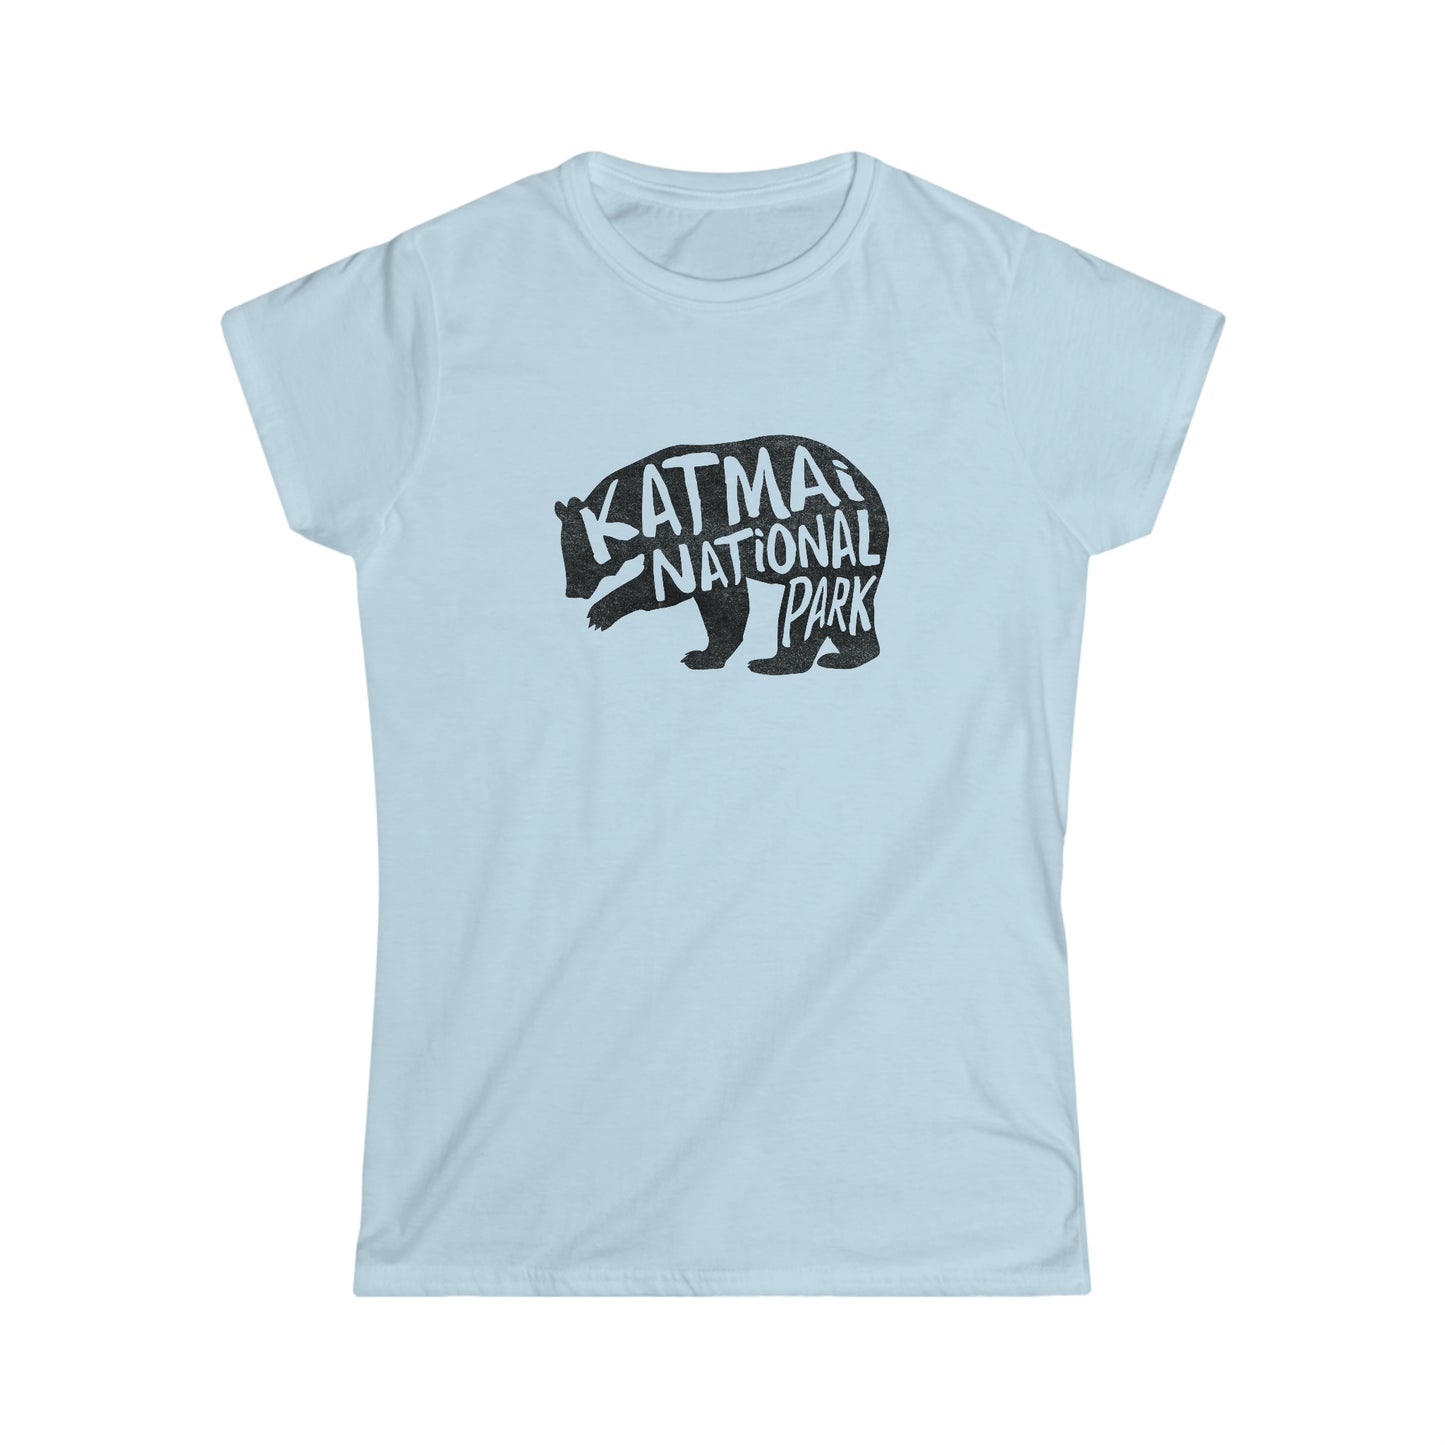 Katmai National Park Women's T-Shirt - Grizzly Bear